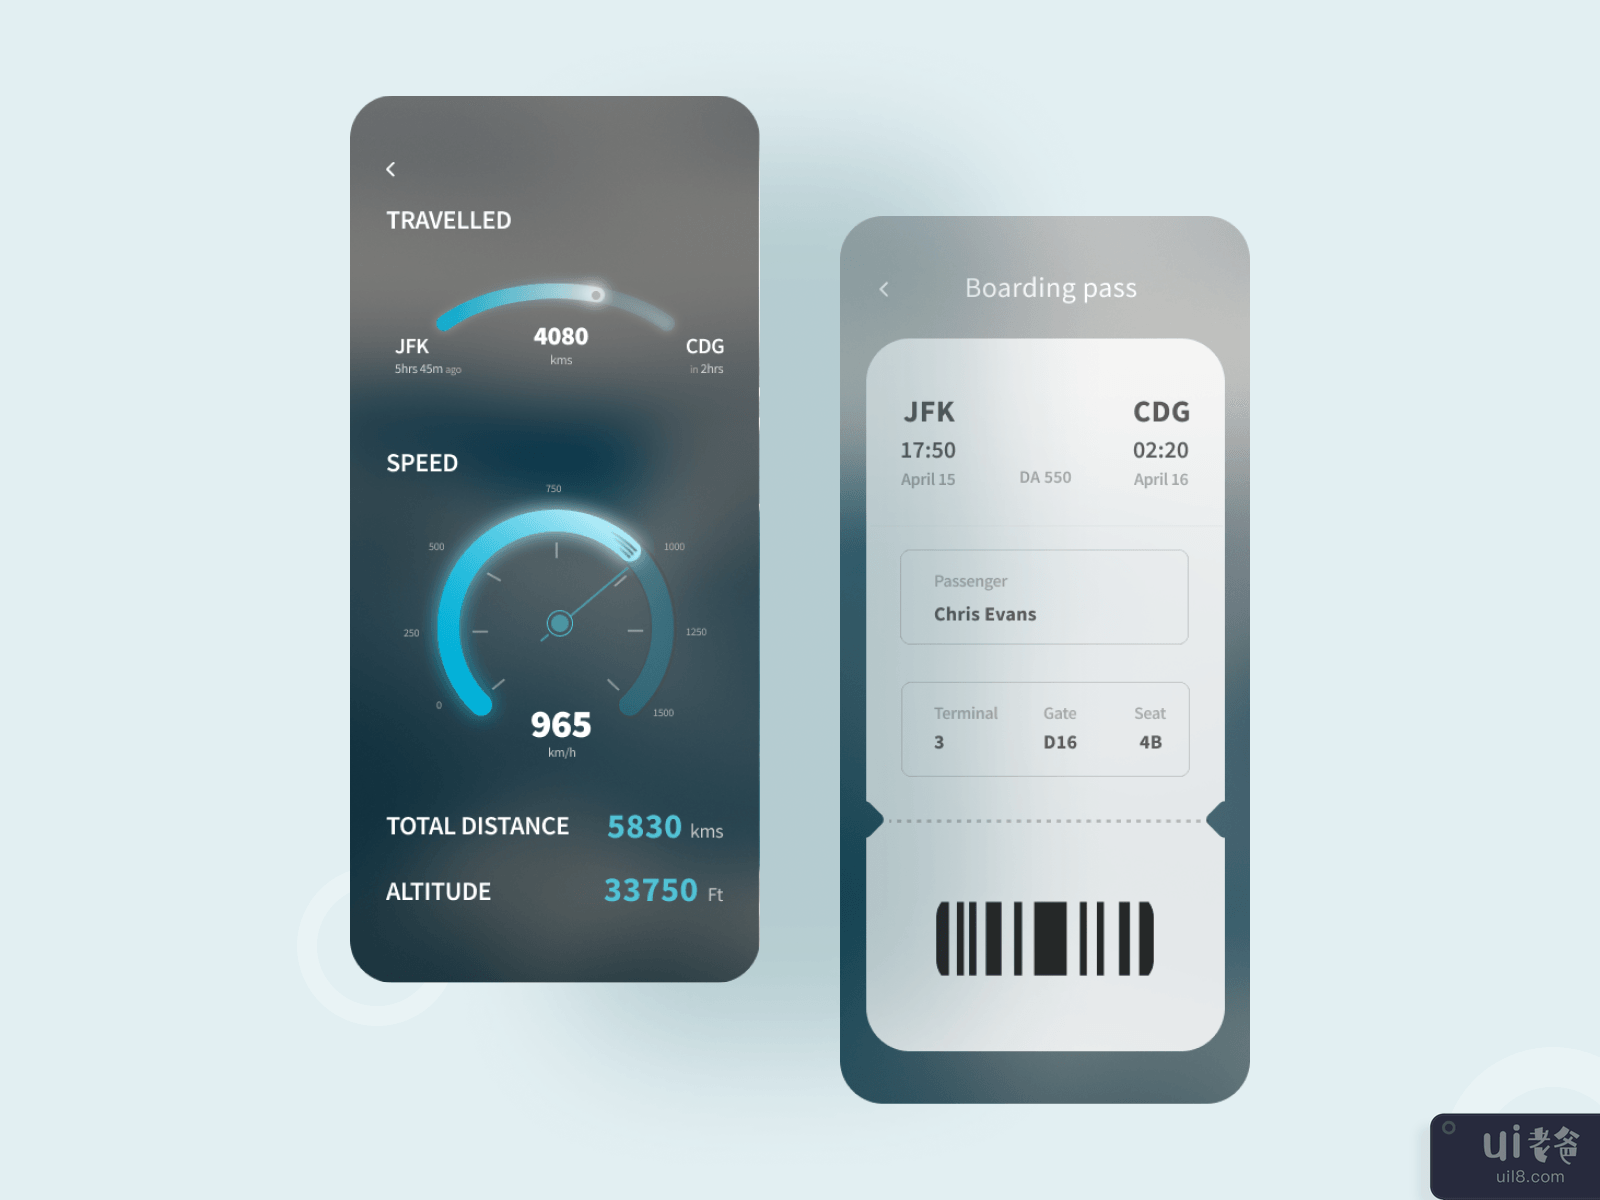 飞行追踪器应用程序 UI 设计(Flight Tracker App UI Design)插图